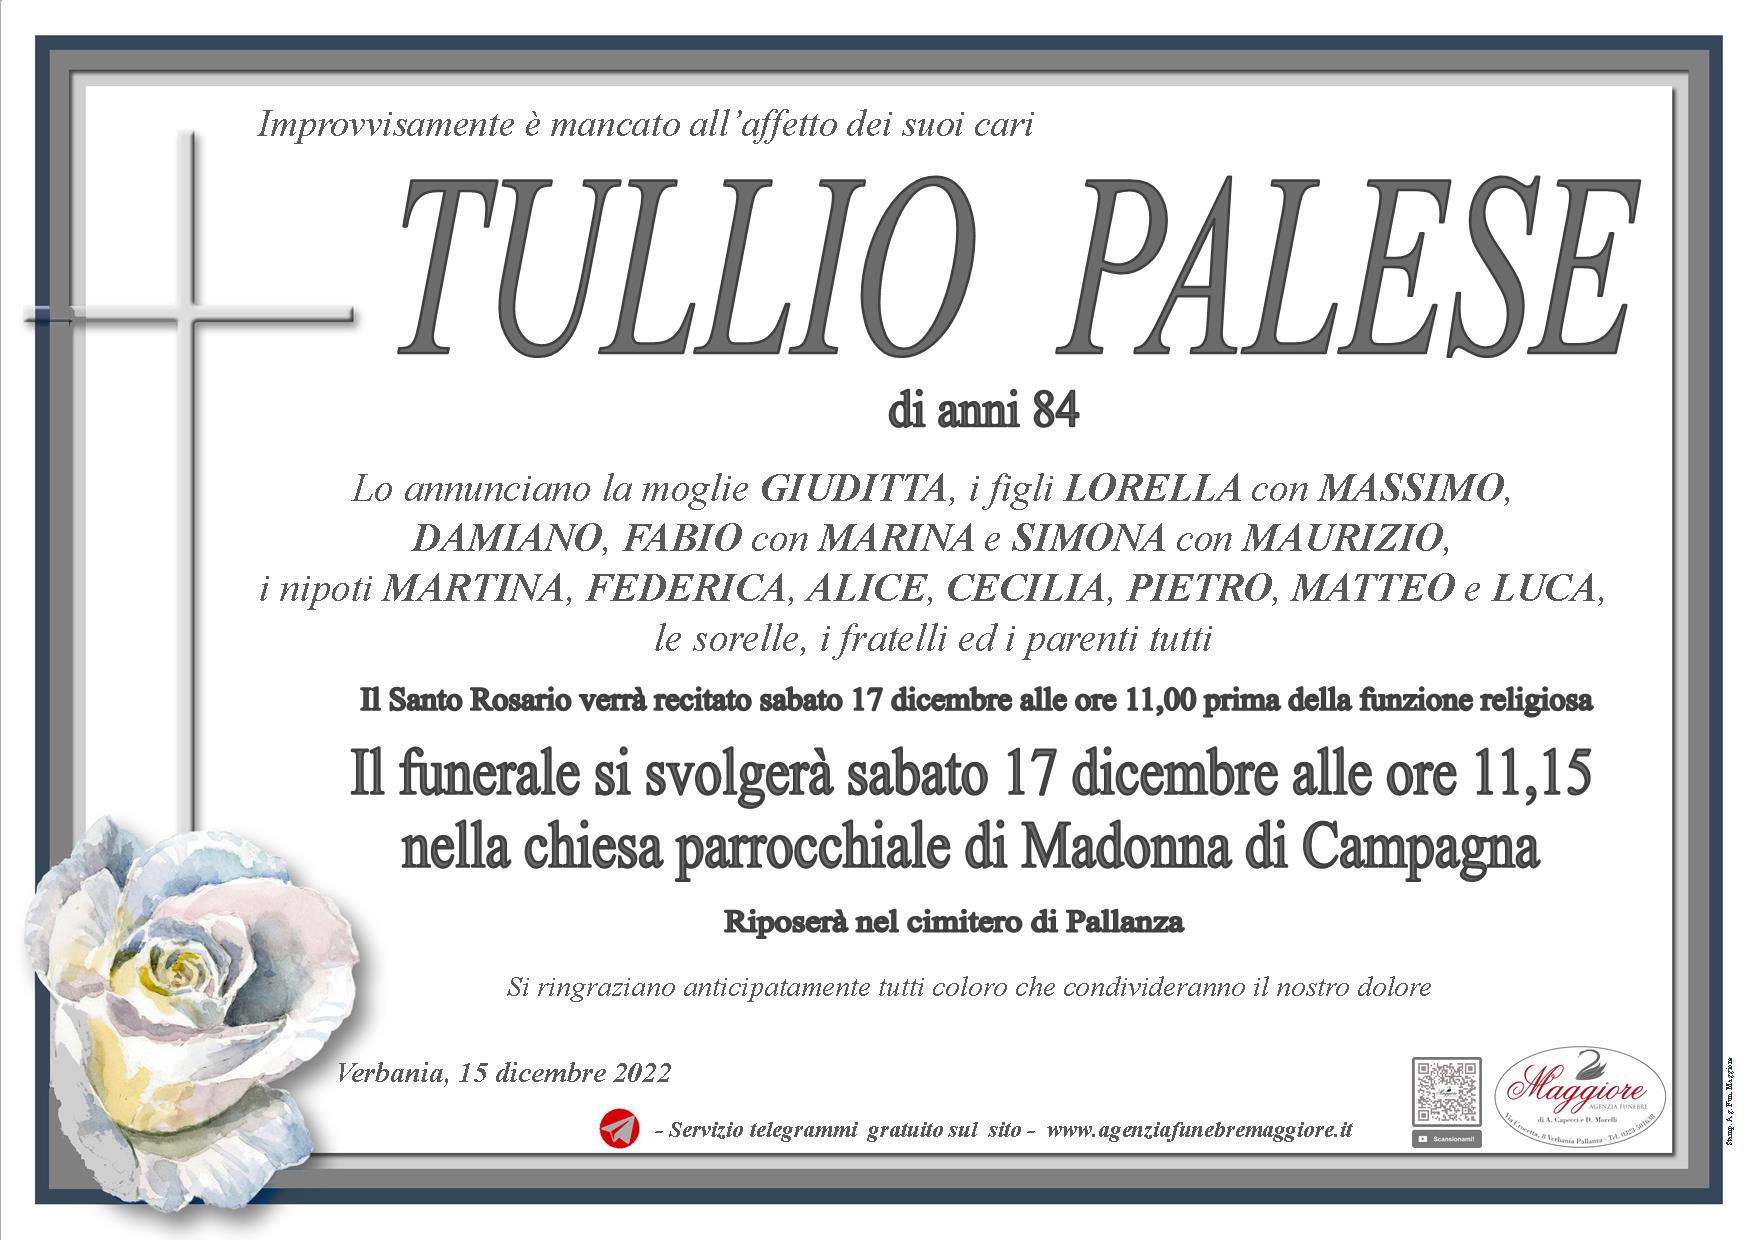 Tullio Palese